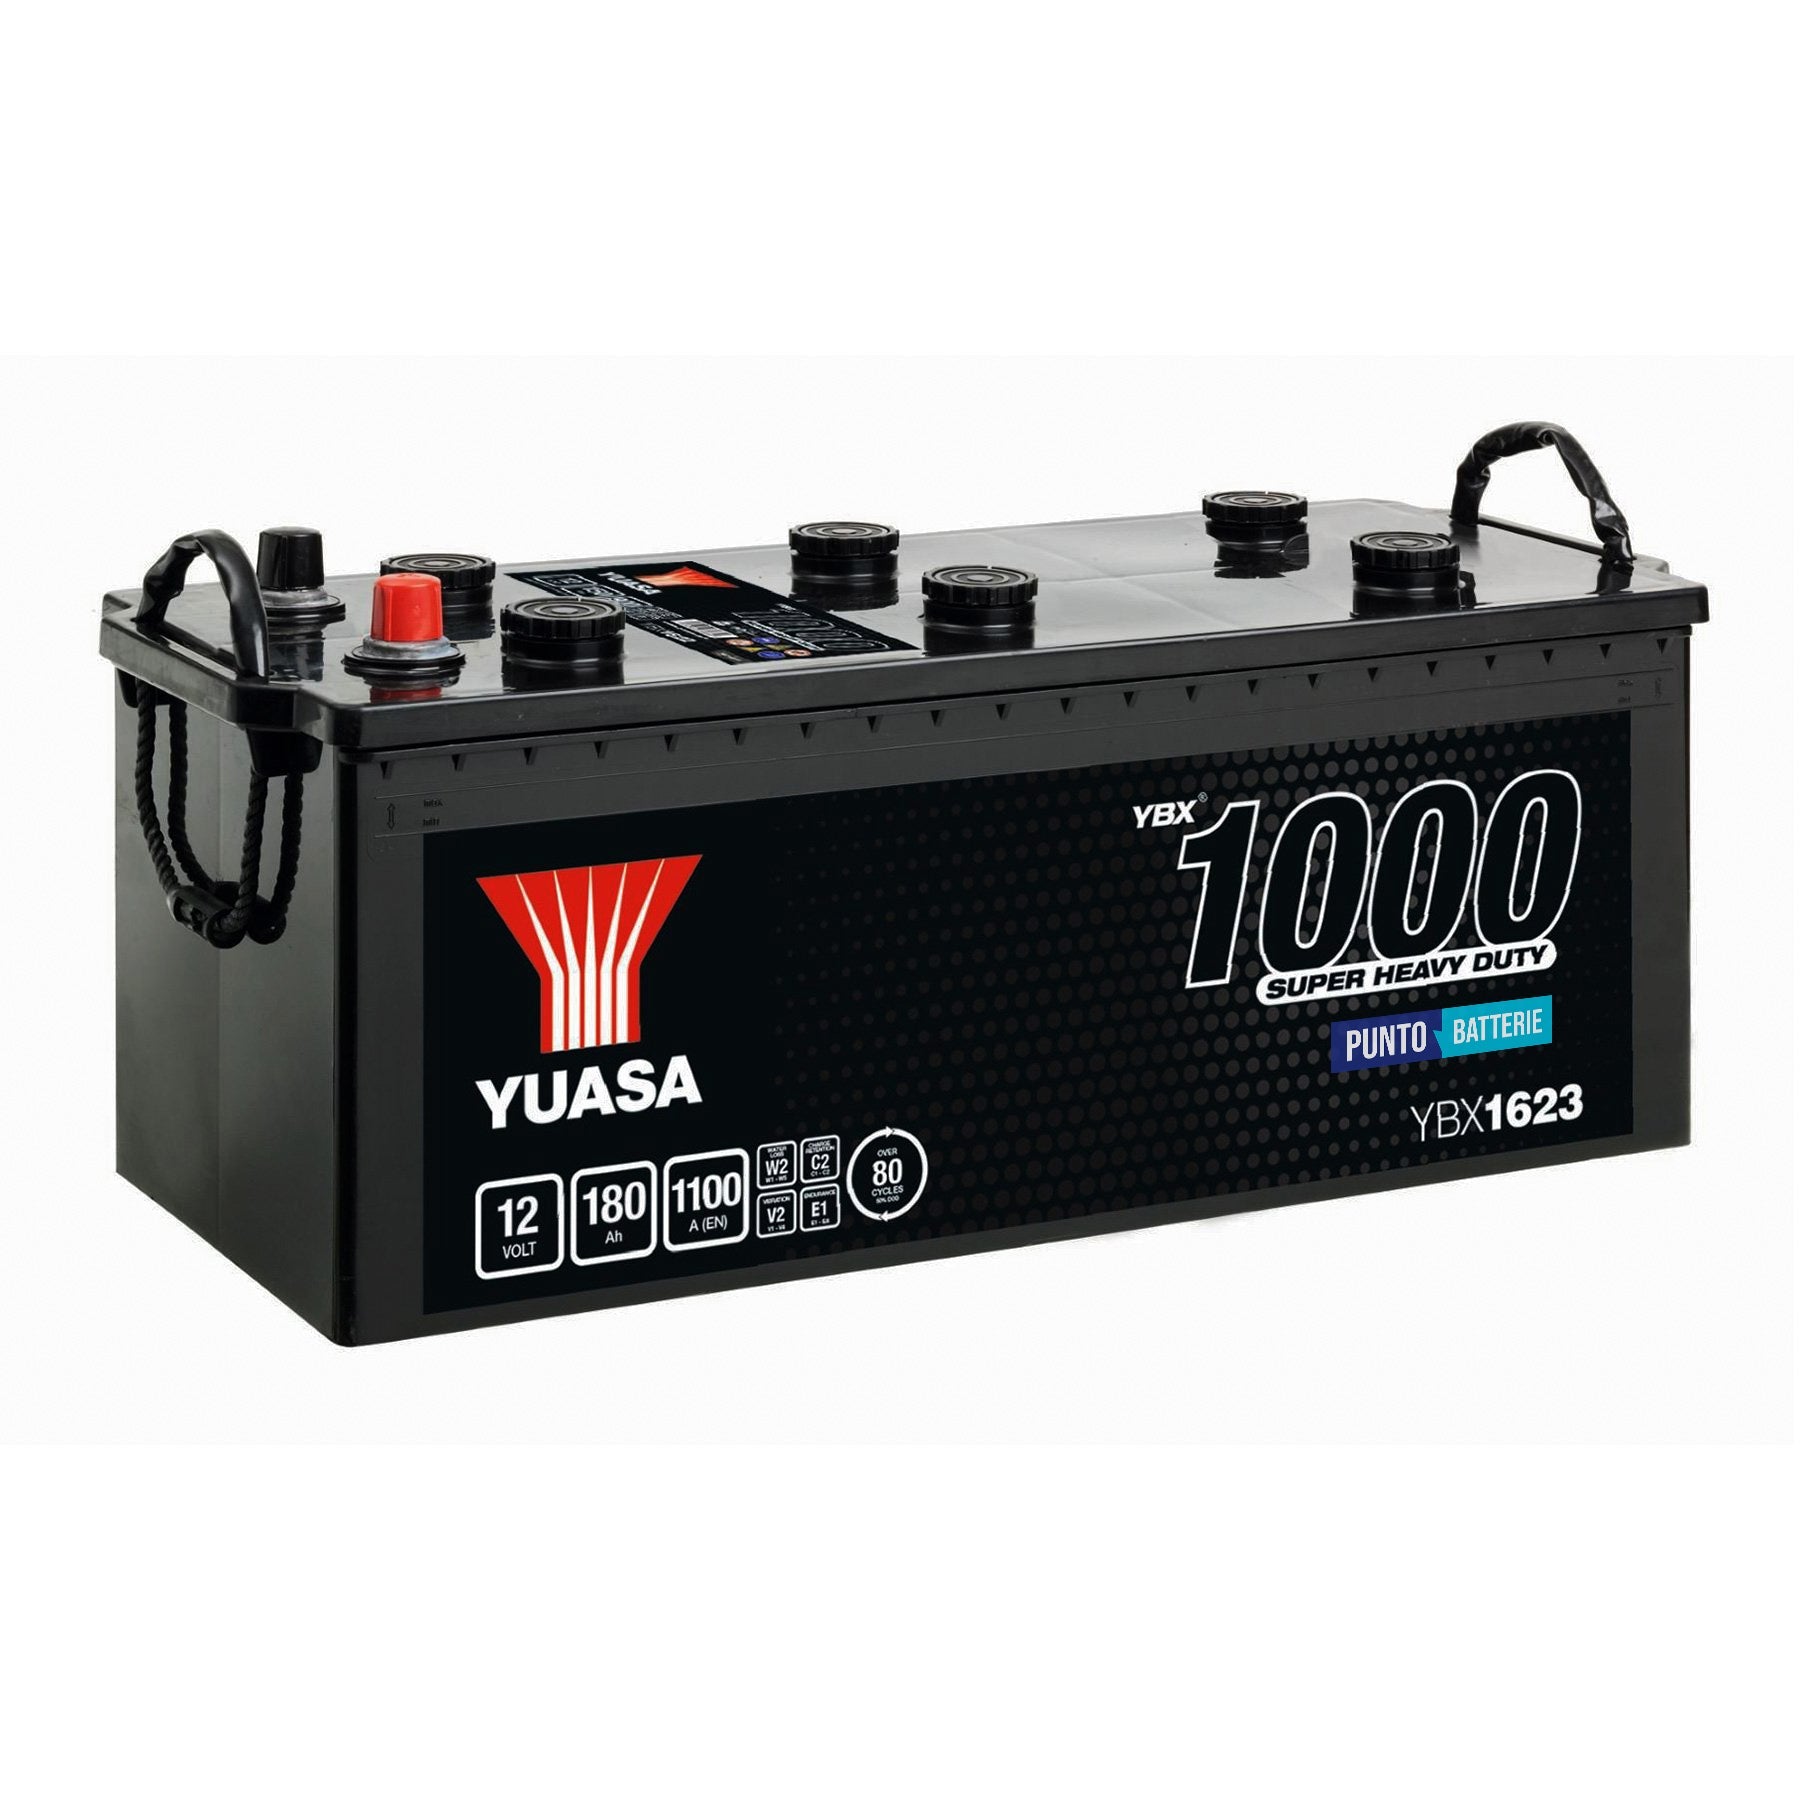 Batteria originale Yuasa YBX1000 YBX1623, dimensioni 513 x 223 x 223, polo positivo a destra, 12 volt, 180 amperora, 1100 ampere. Batteria per camion e veicoli pesan